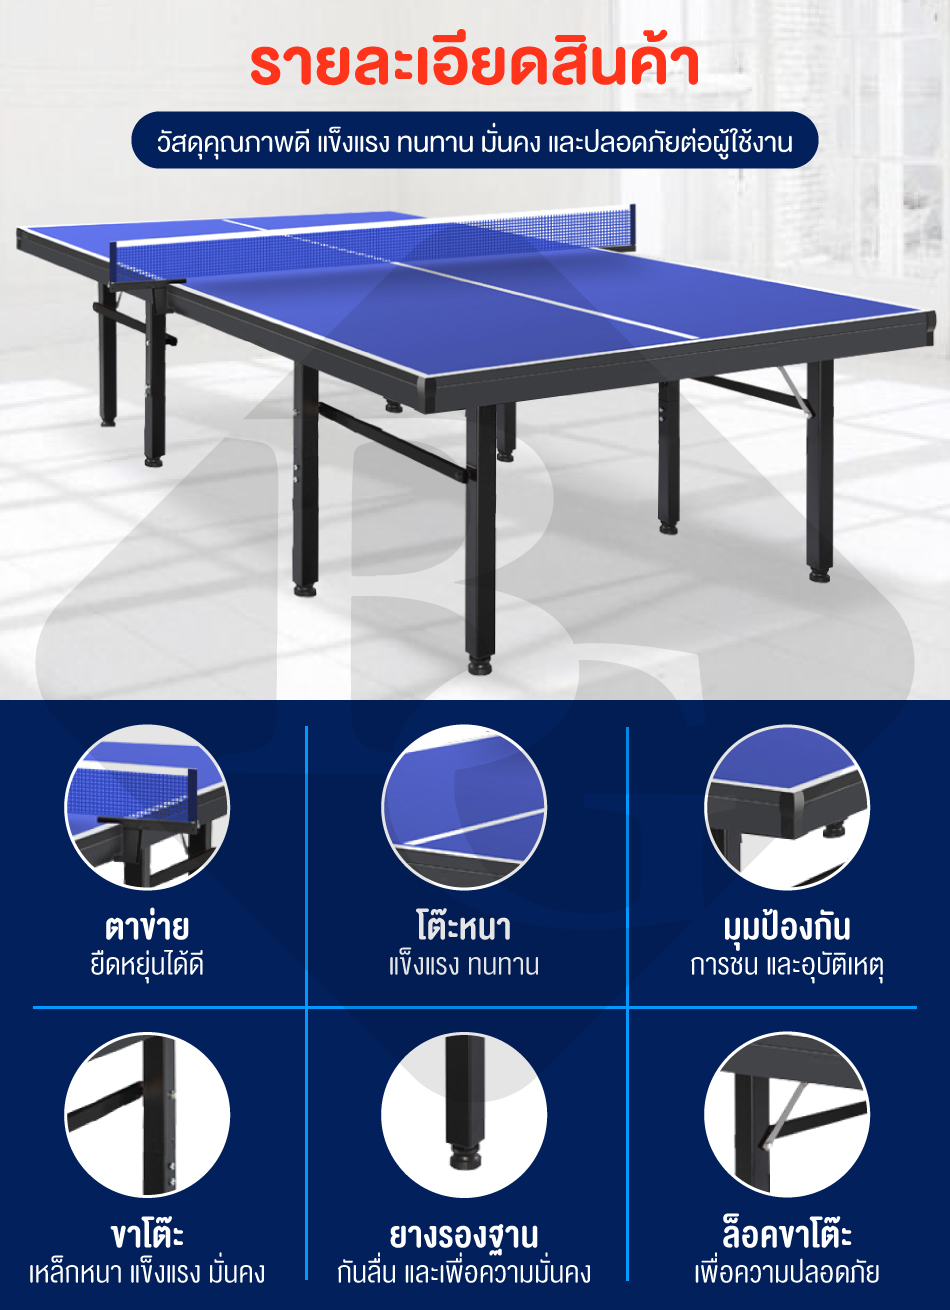 รูปภาพเพิ่มเติมเกี่ยวกับ B&G โต๊ะปิงปอง โต๊ะปิงปองมาตรฐานแข่งขัน สามารถพับเก็บได้ โครงเหล็กแข็งแรง หนา 12.24 mm HDF Table Tennis รุ่น 5007 (โปรโมชั่นพิเศษ แถมฟรีไม้ปิงปอง)